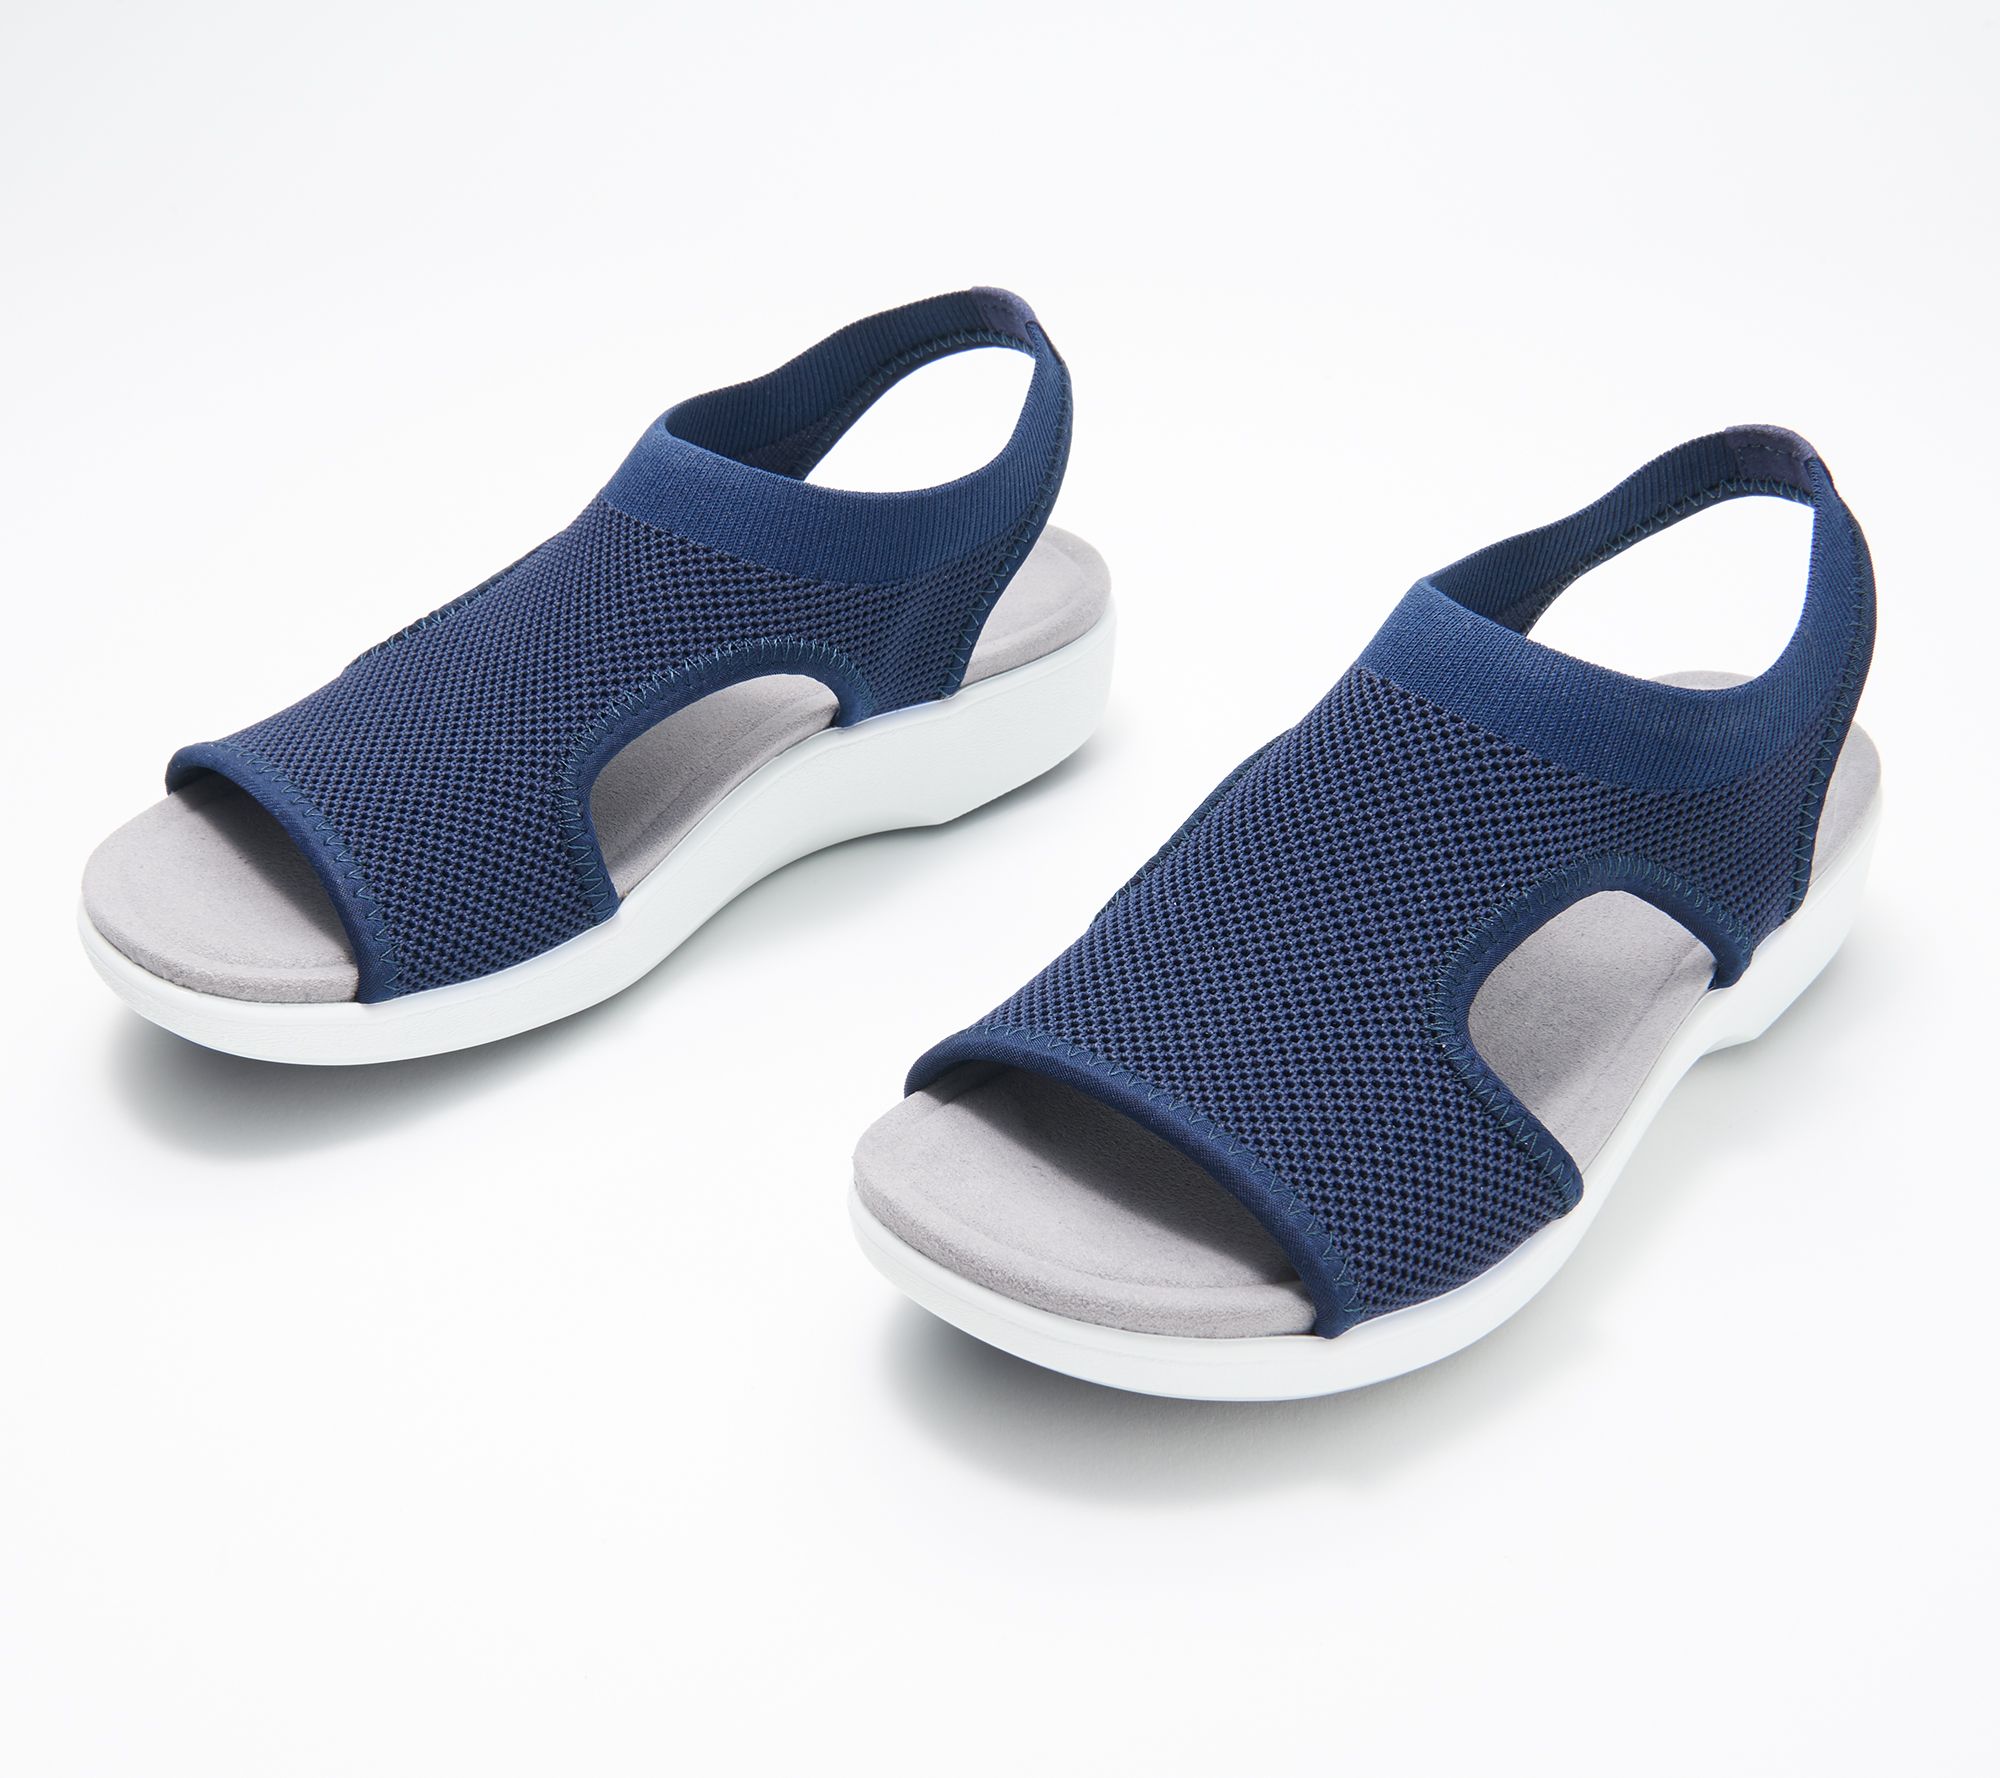 TRAQ by Alegria Dream Knit Sport Sandals - Qeen - QVC.com